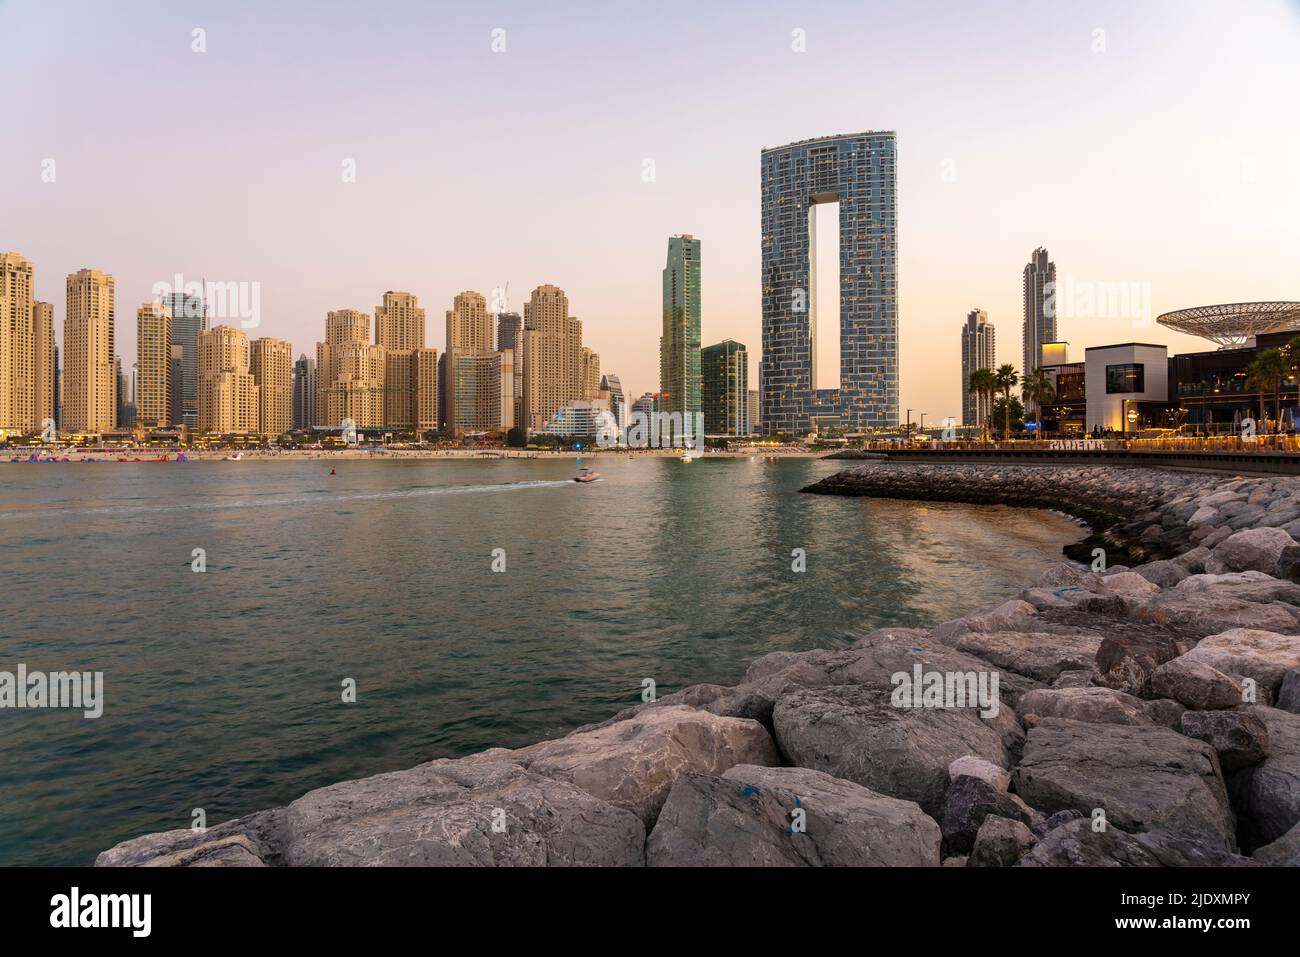 Emirats Arabes Unis, Dubaï, Skyline des appartements et hôtels côtiers au crépuscule Banque D'Images